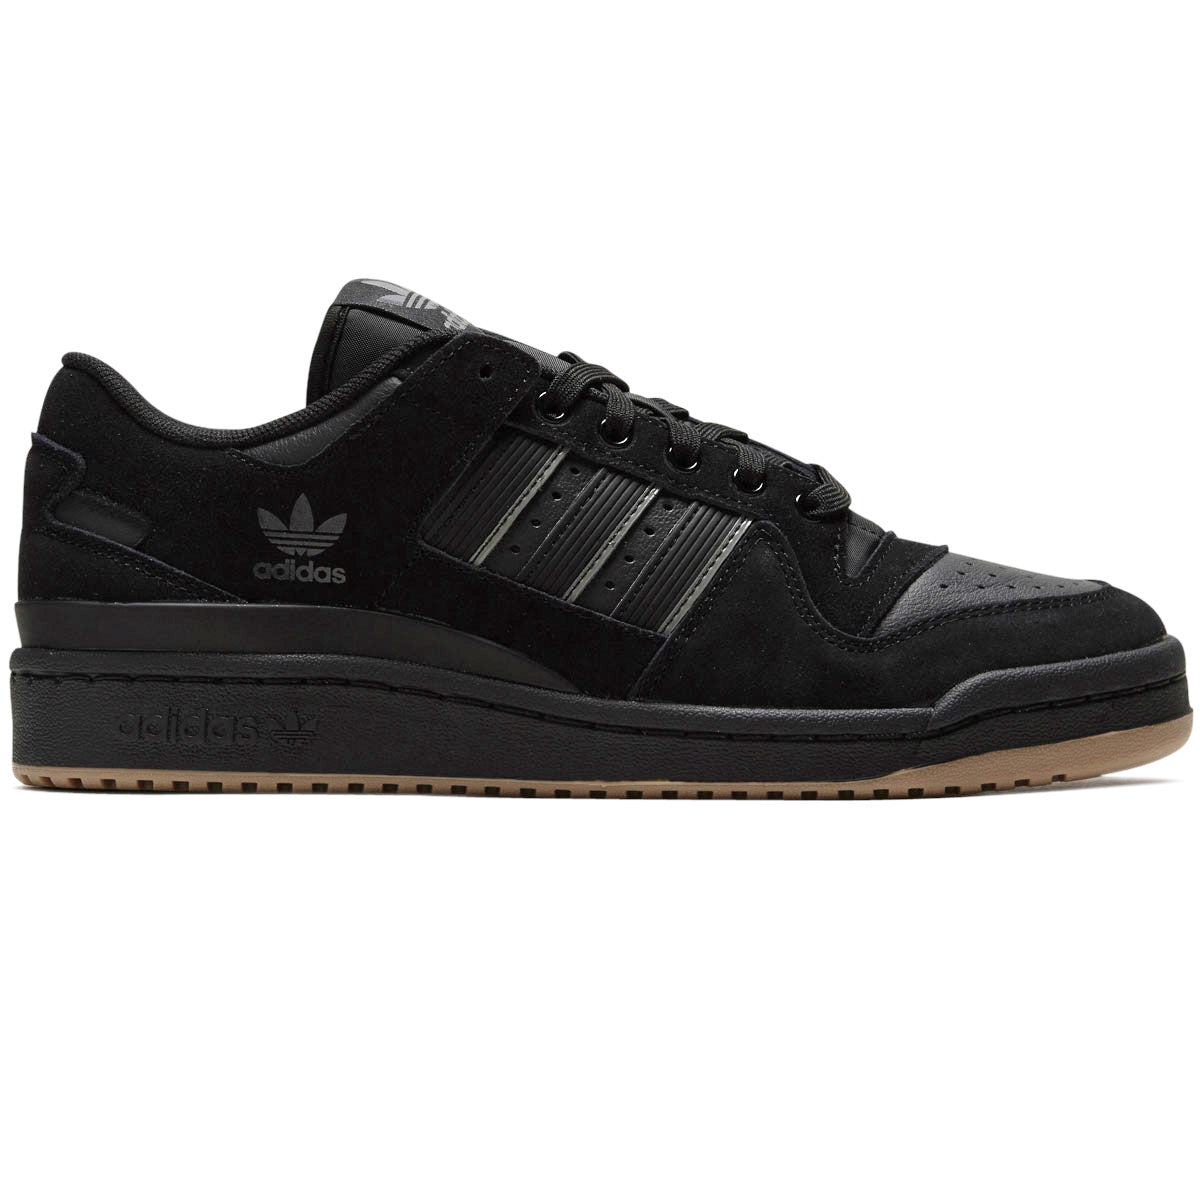 Adidas Forum 84 Low Adv Shoes - Core Black/Carbon/Grey image 1